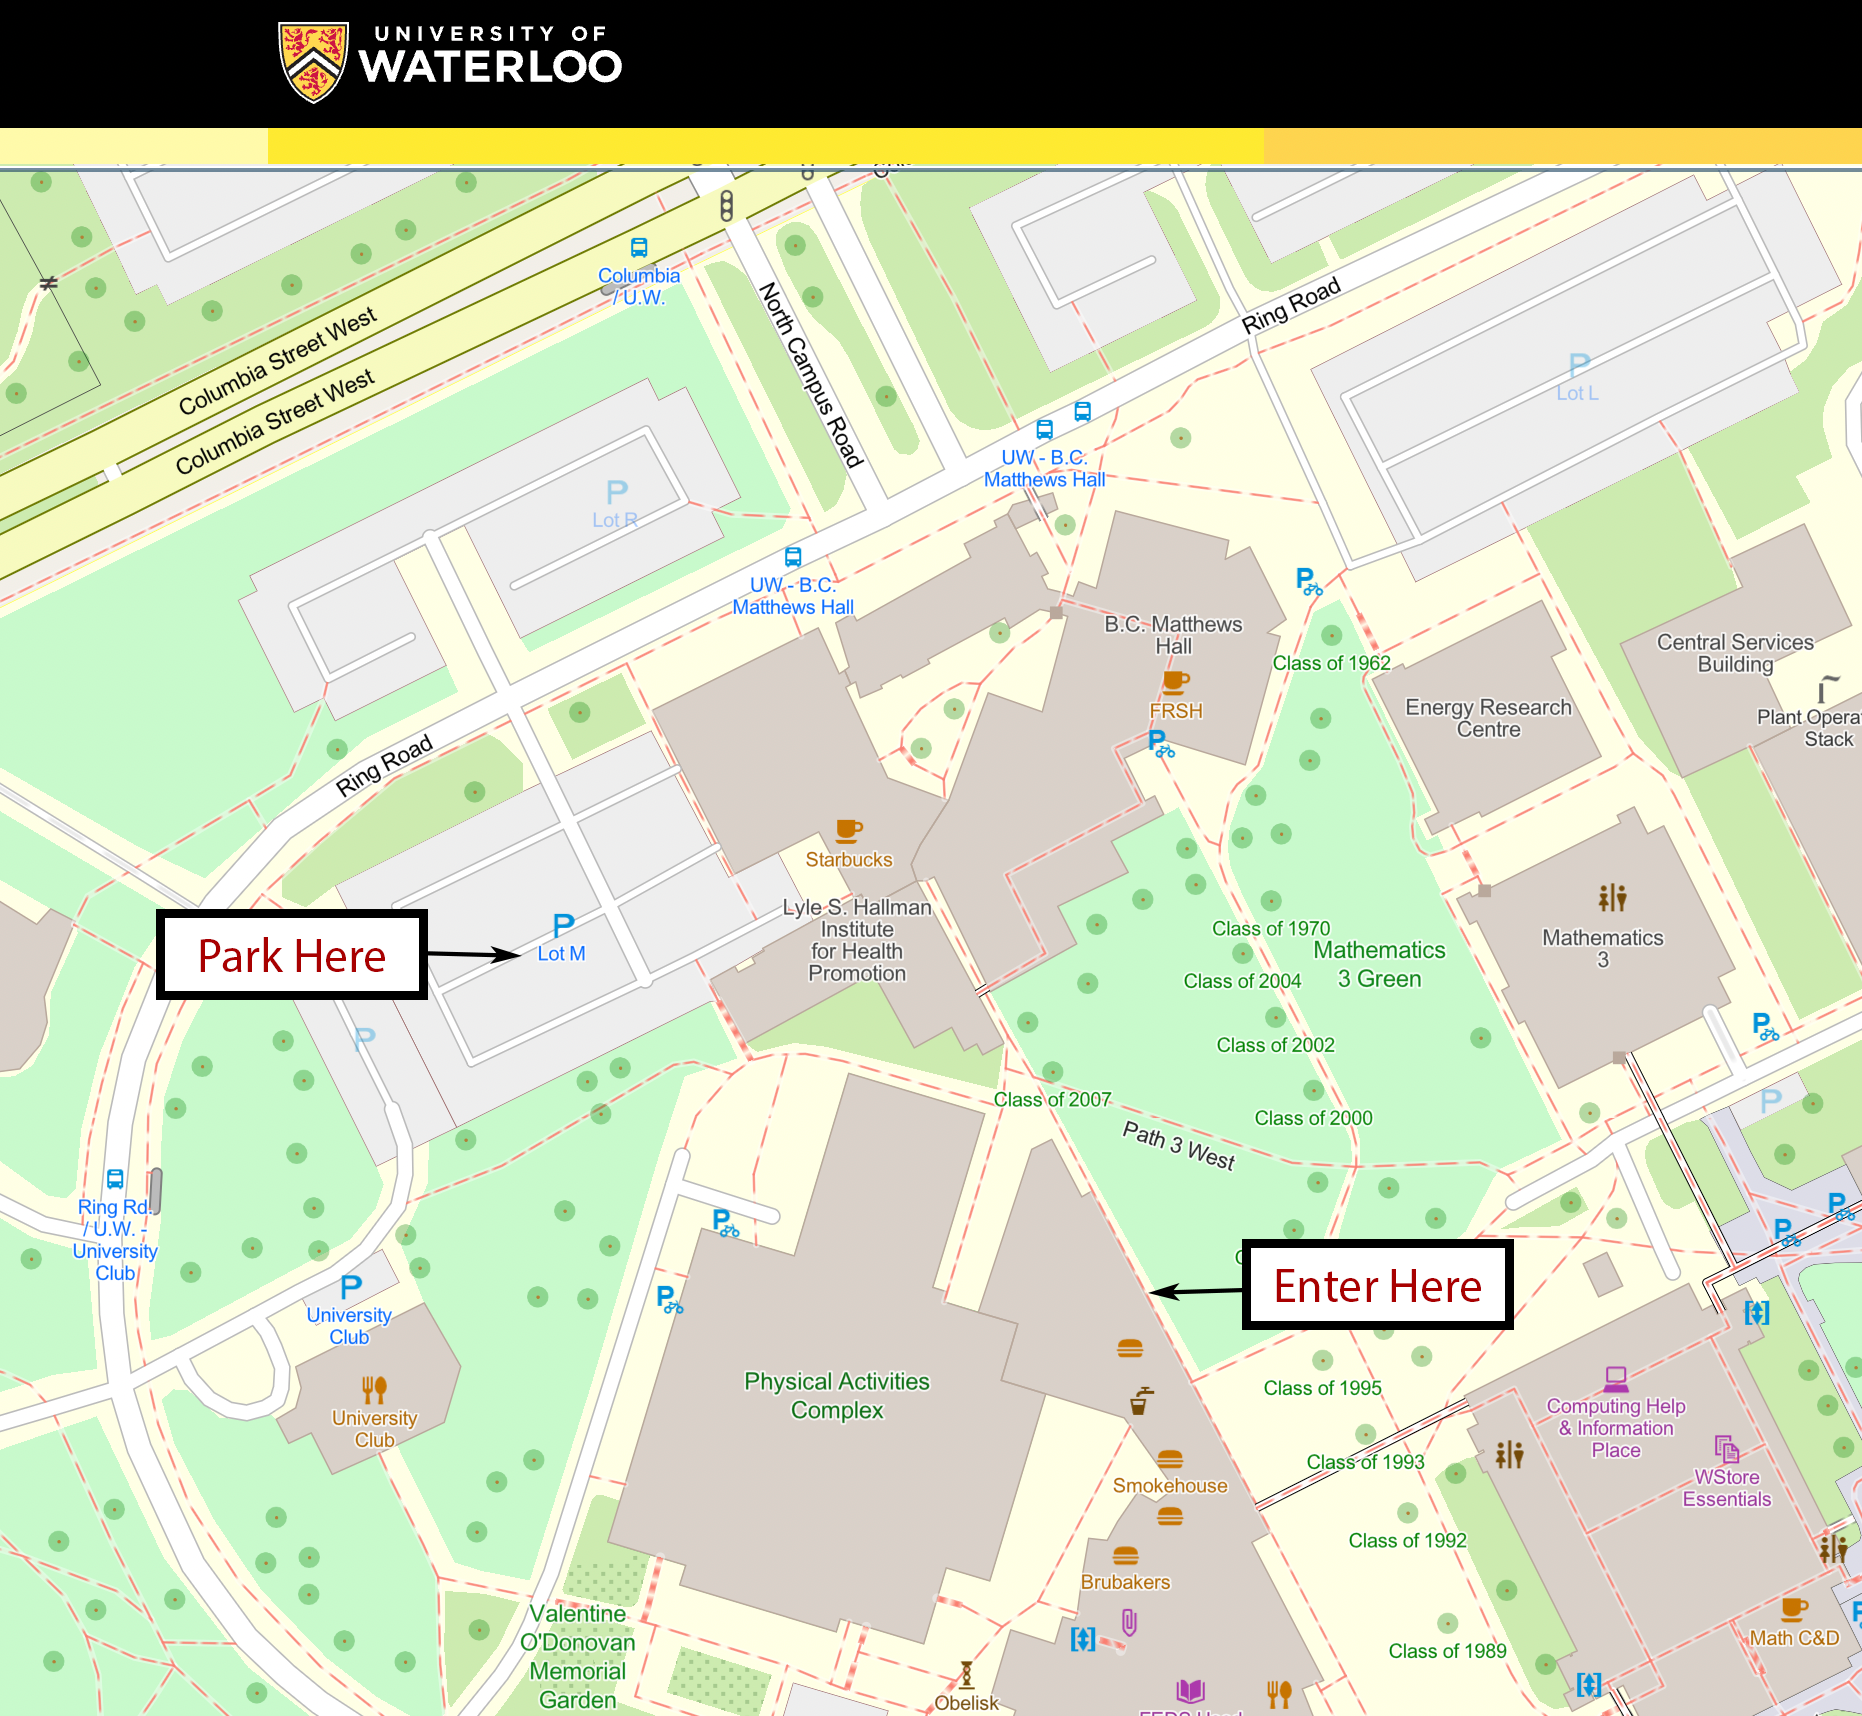 University of Waterloo (UW) Campus Map